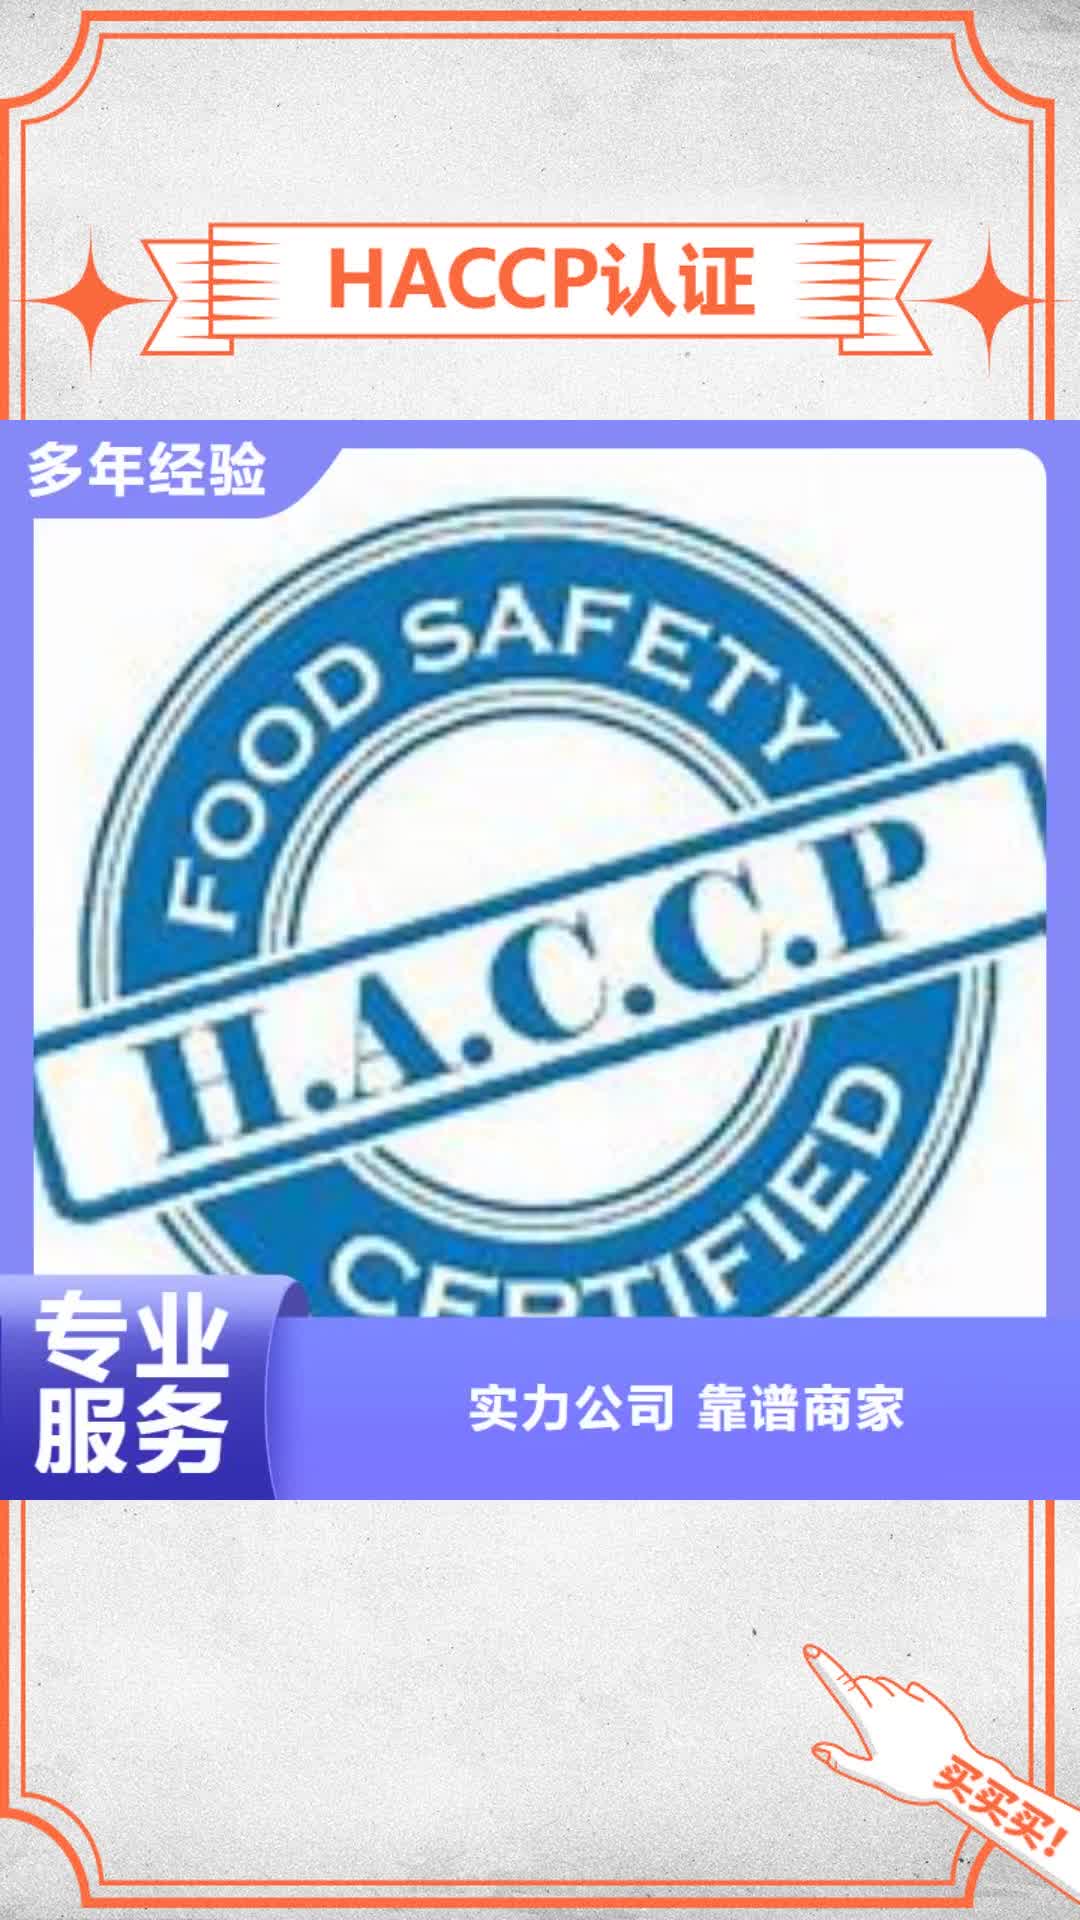 阜新 HACCP认证【IATF16949认证】技术精湛